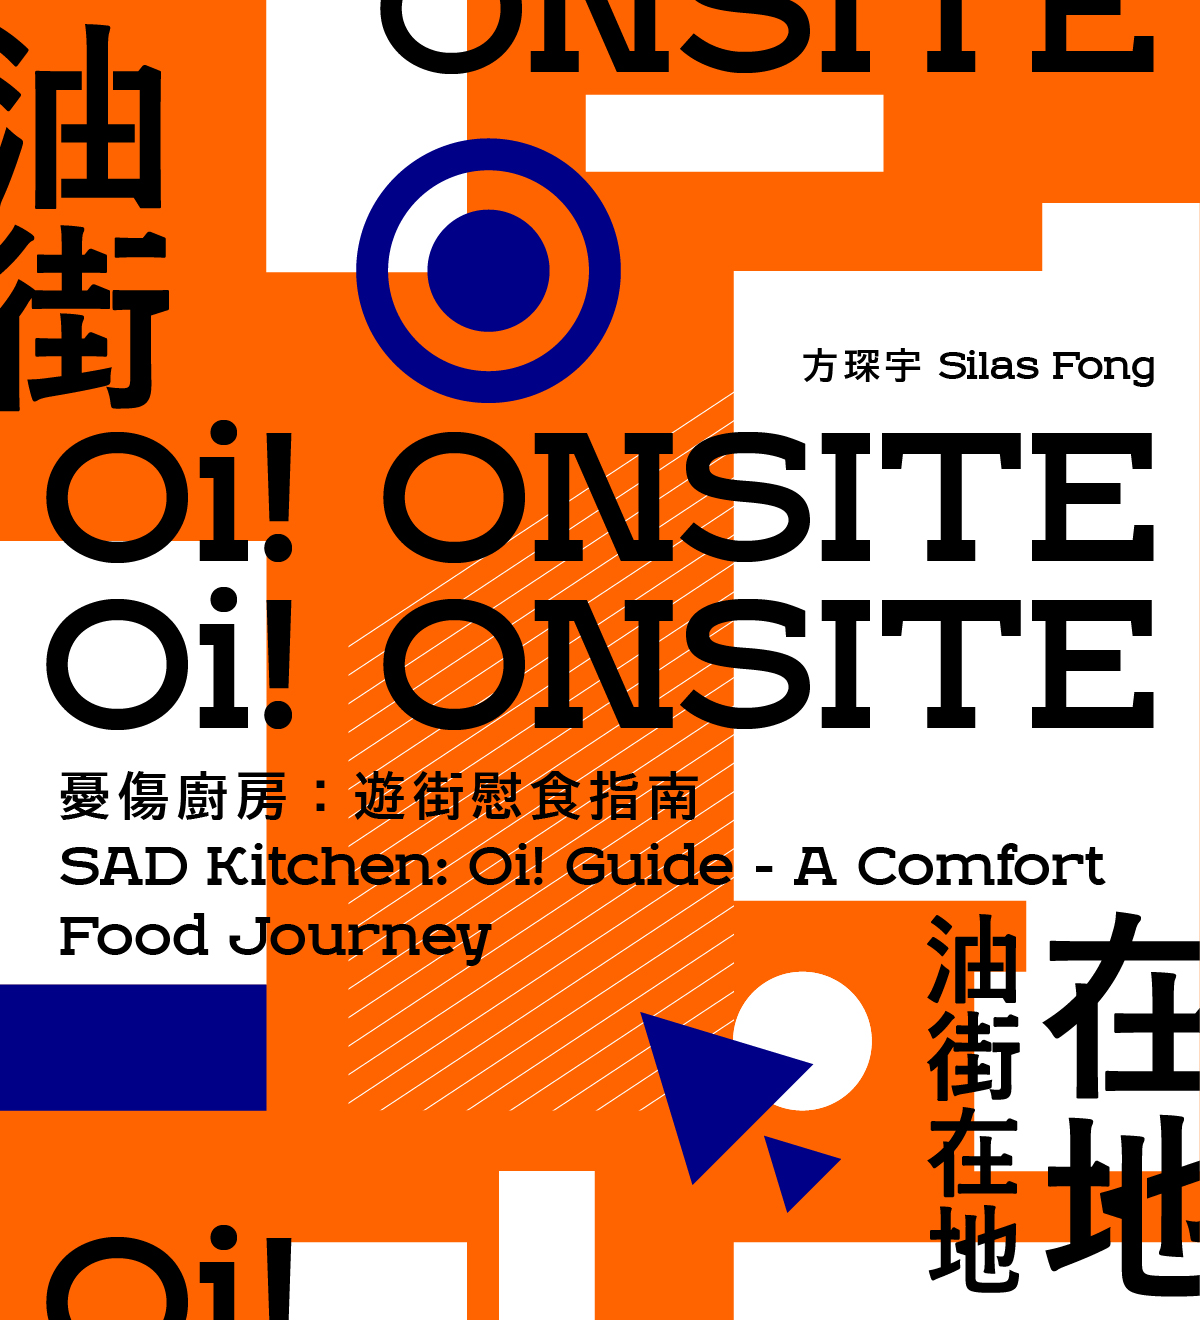 油街在地驻场艺术家展览 — 忧伤厨房：遊街慰食指南 - mobile